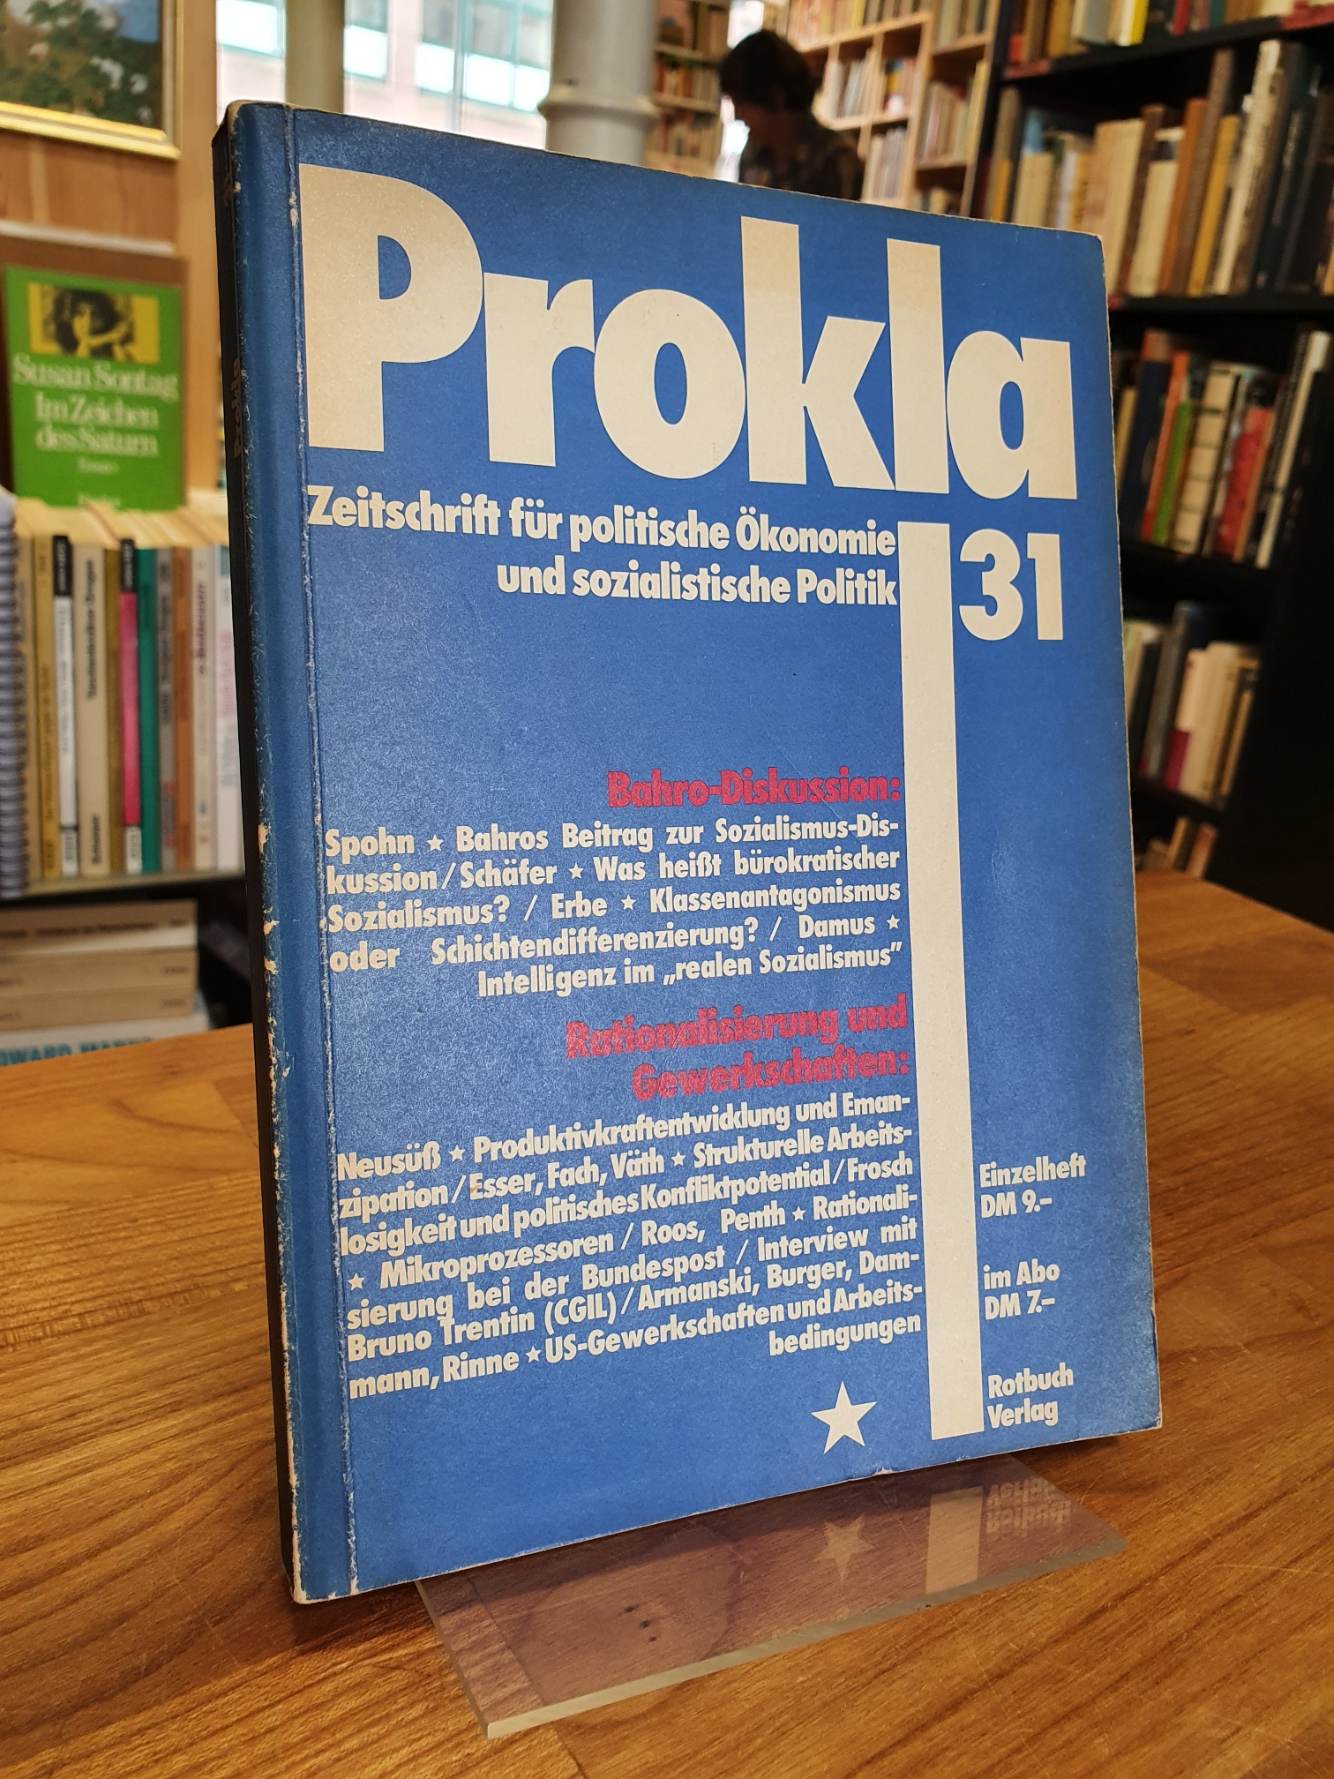 Vereinigung zur Kritik der politischen Ökonomie e.V. (Hrsg.), Prokla – Zeitschri